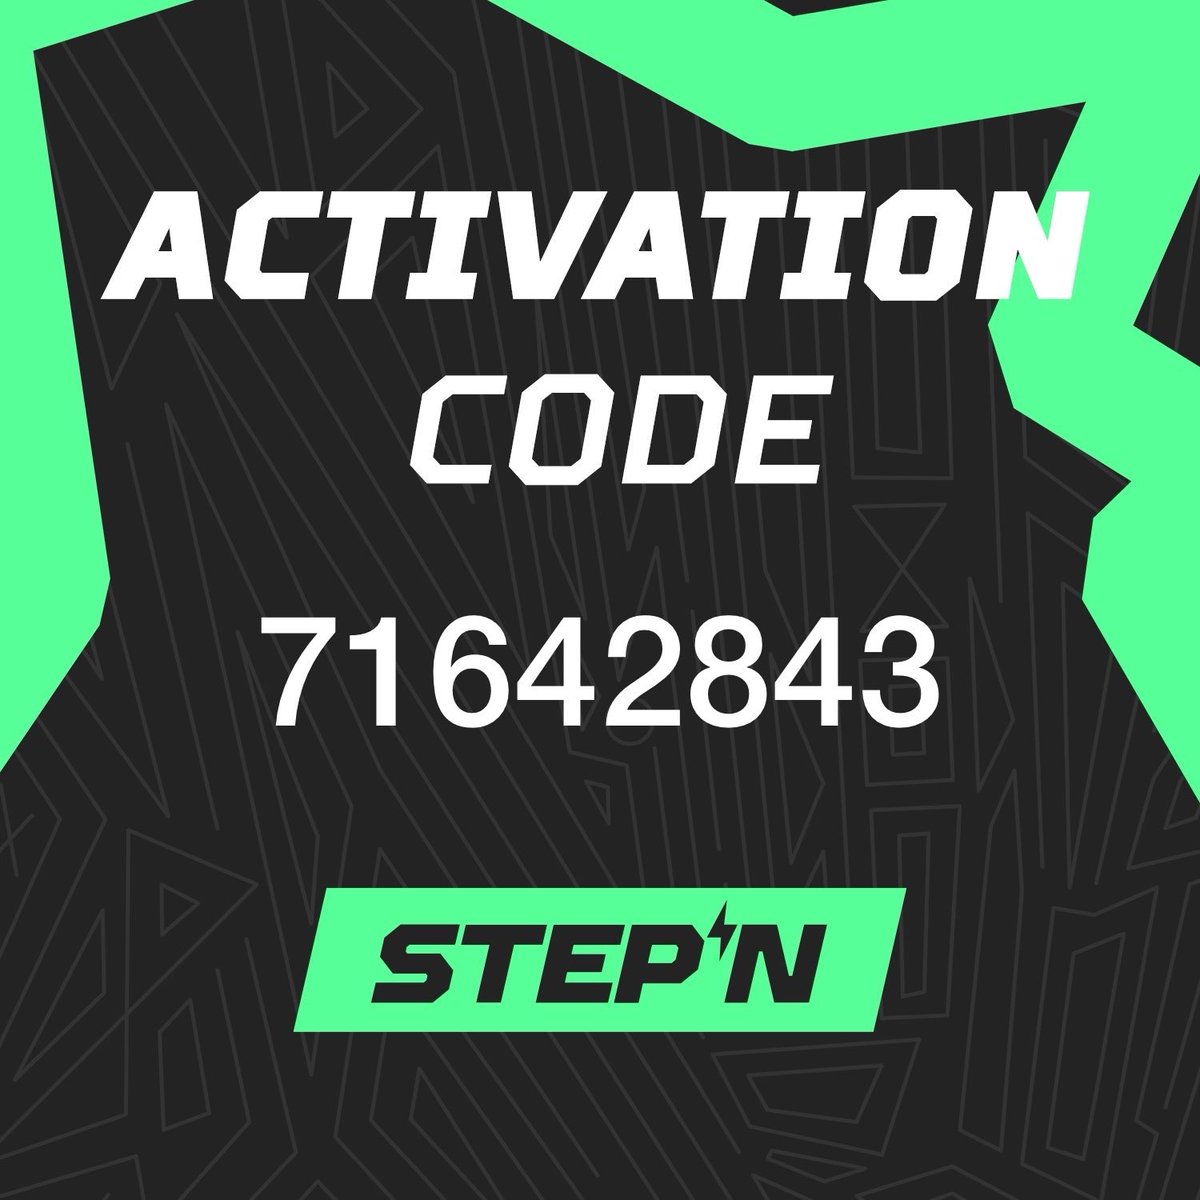 STEPN Activation Code – 👟 Get the App 👟 – stepn.com

#STEPN #StepnActivationCode #StepnActivation